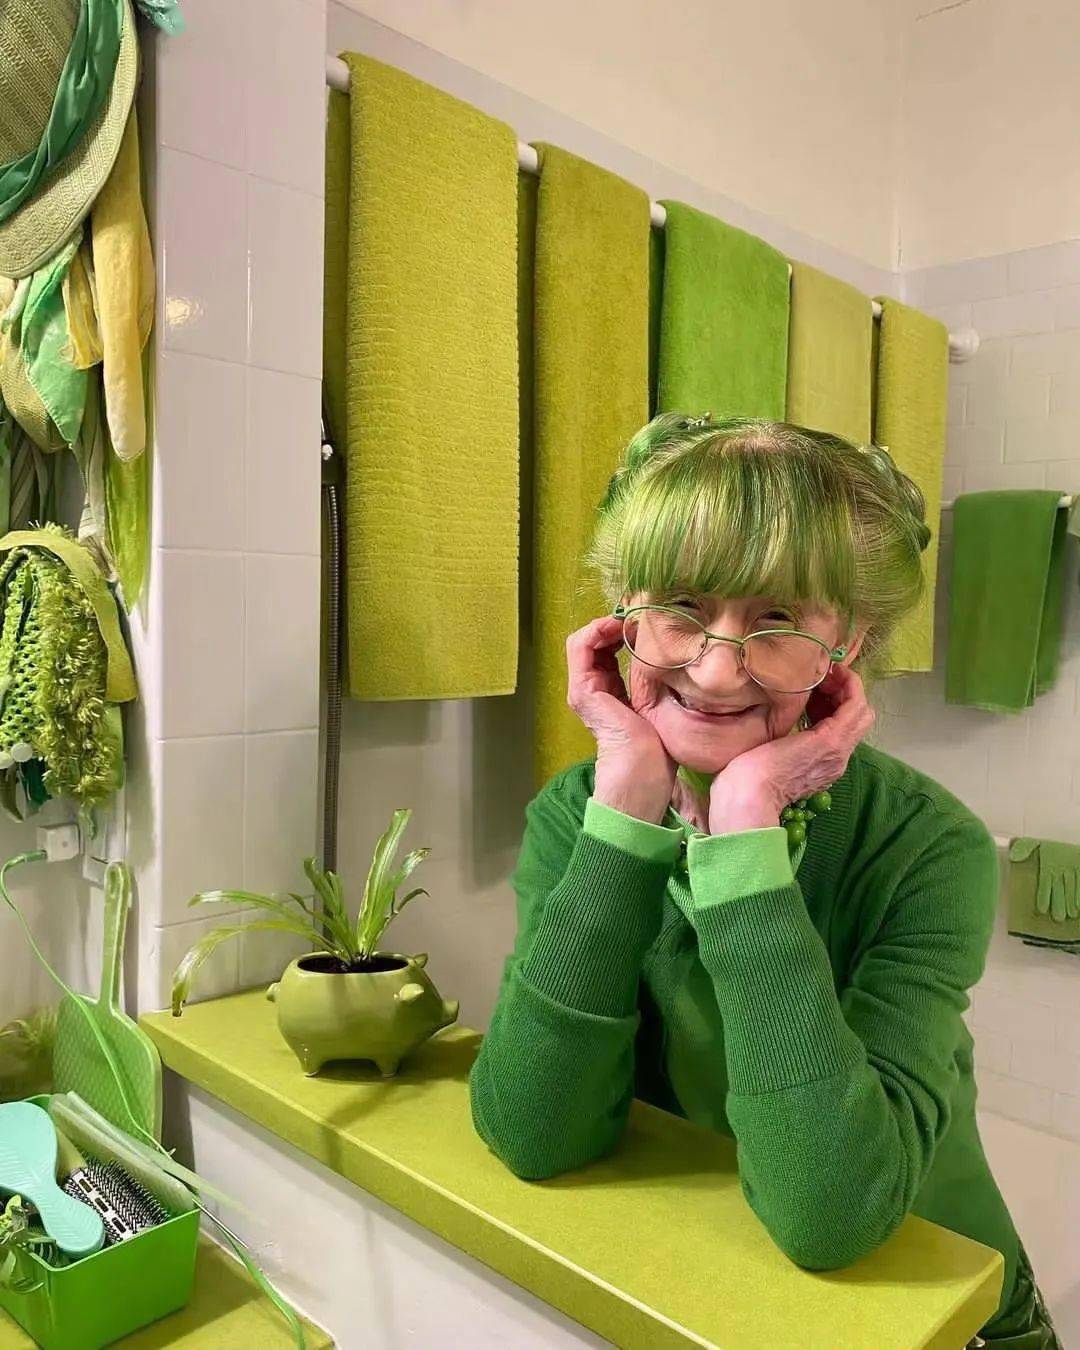 全球最火的网绿奶奶,染绿色头发,住绿色的家!